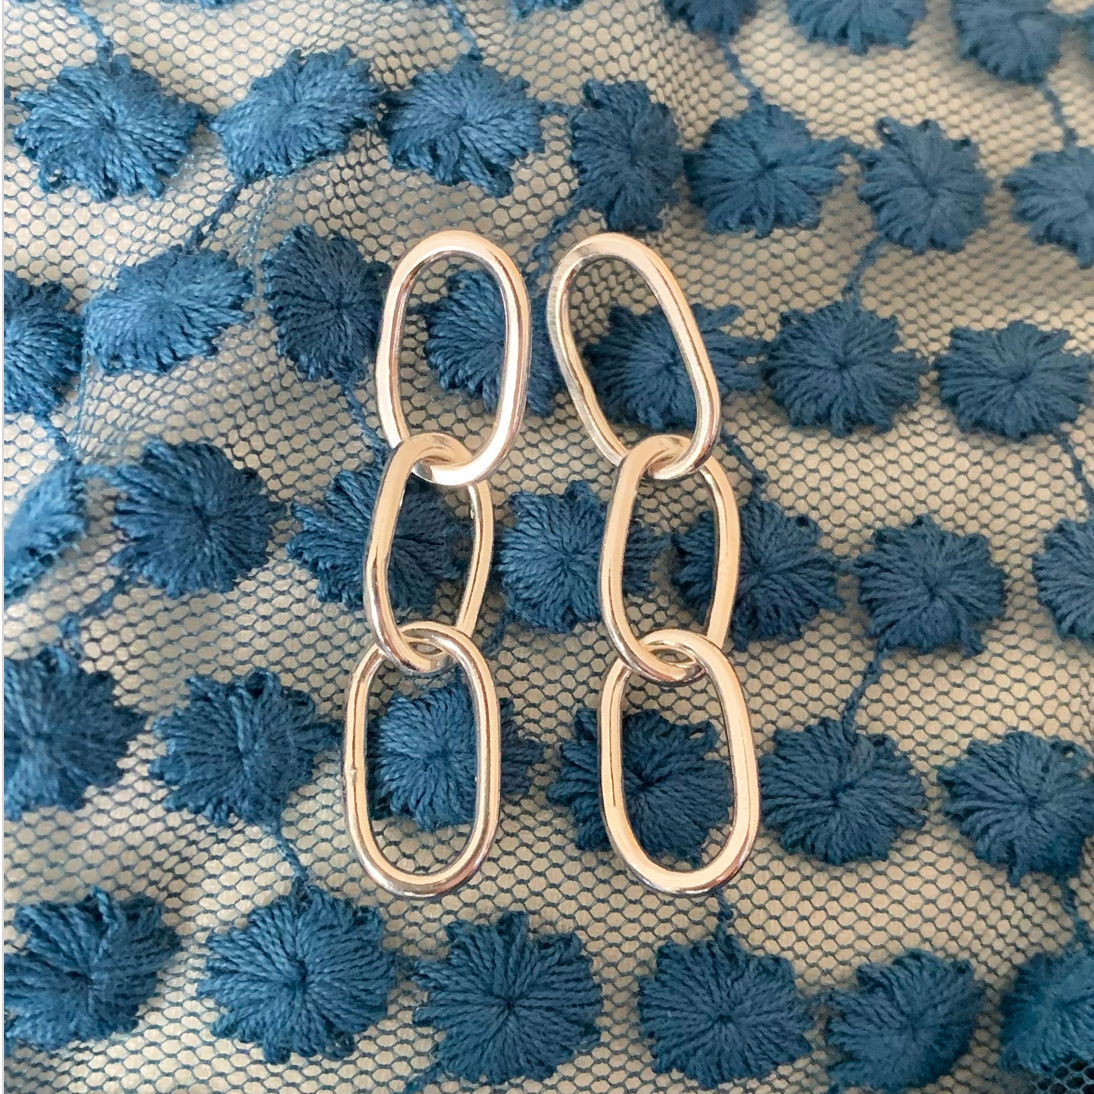 Sterling silver oval pastille triple-chain link earrings.